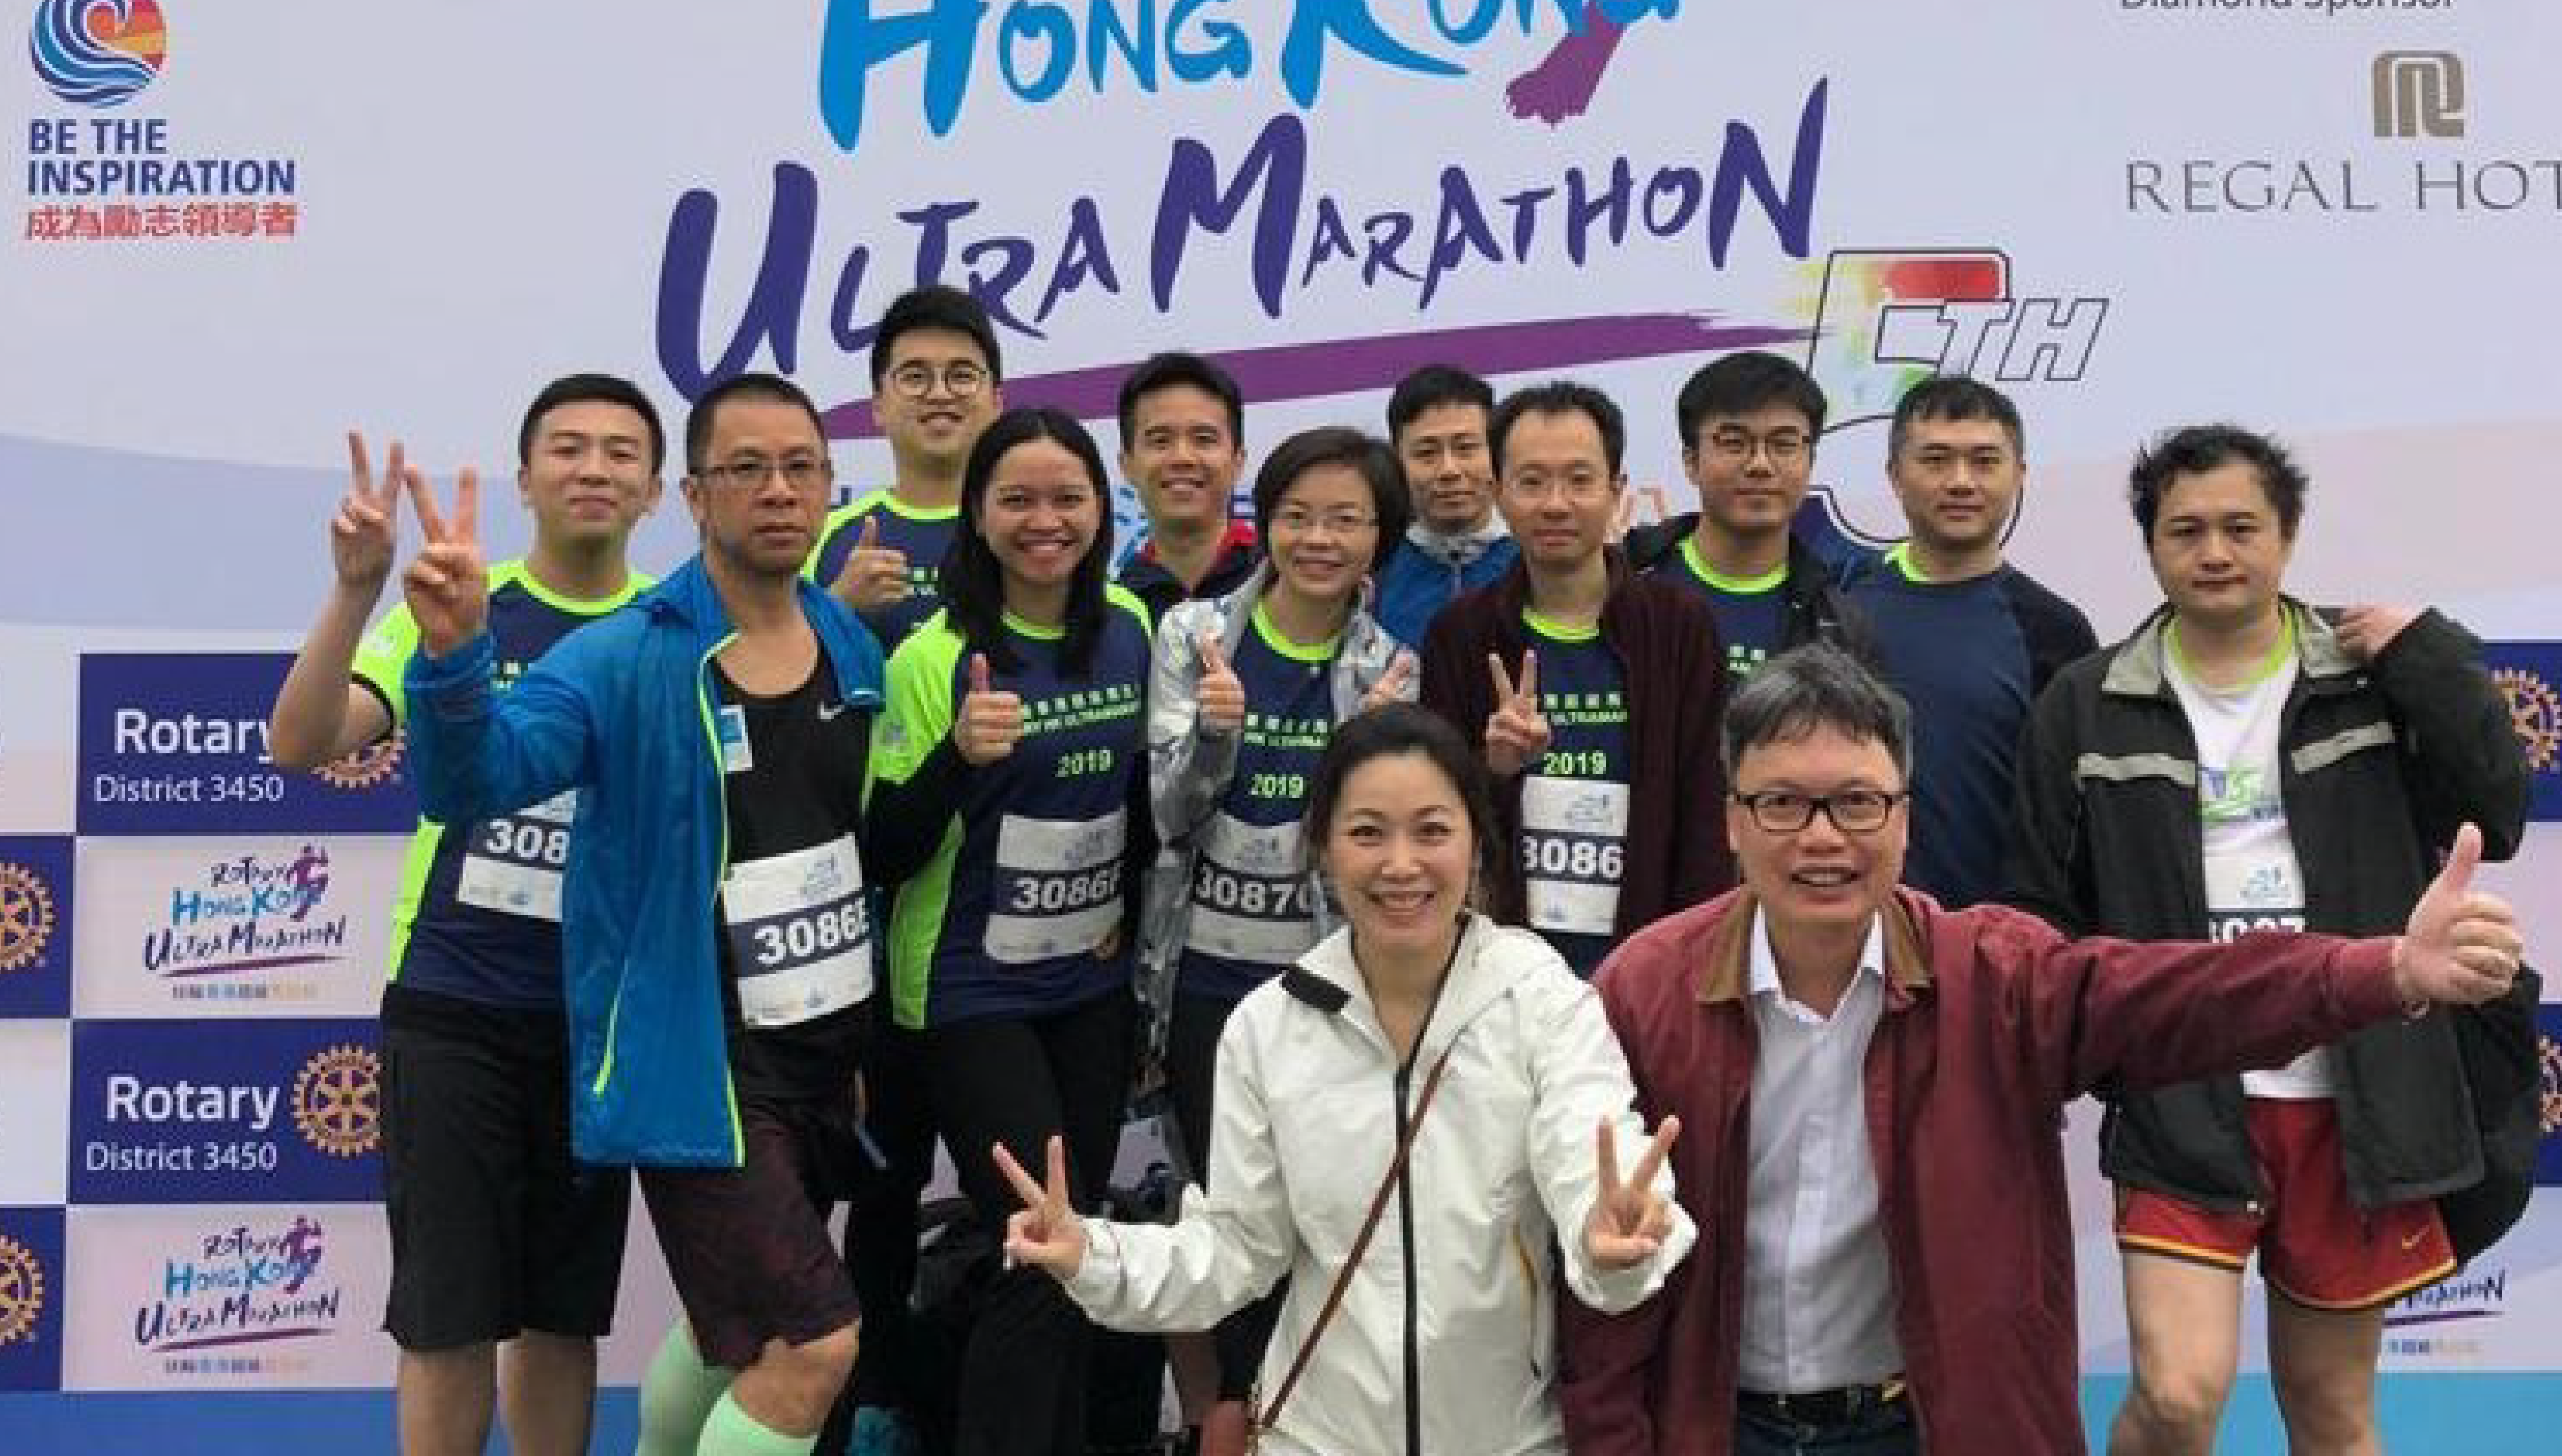 Rotary Hong Kong Ultramarathon 2019